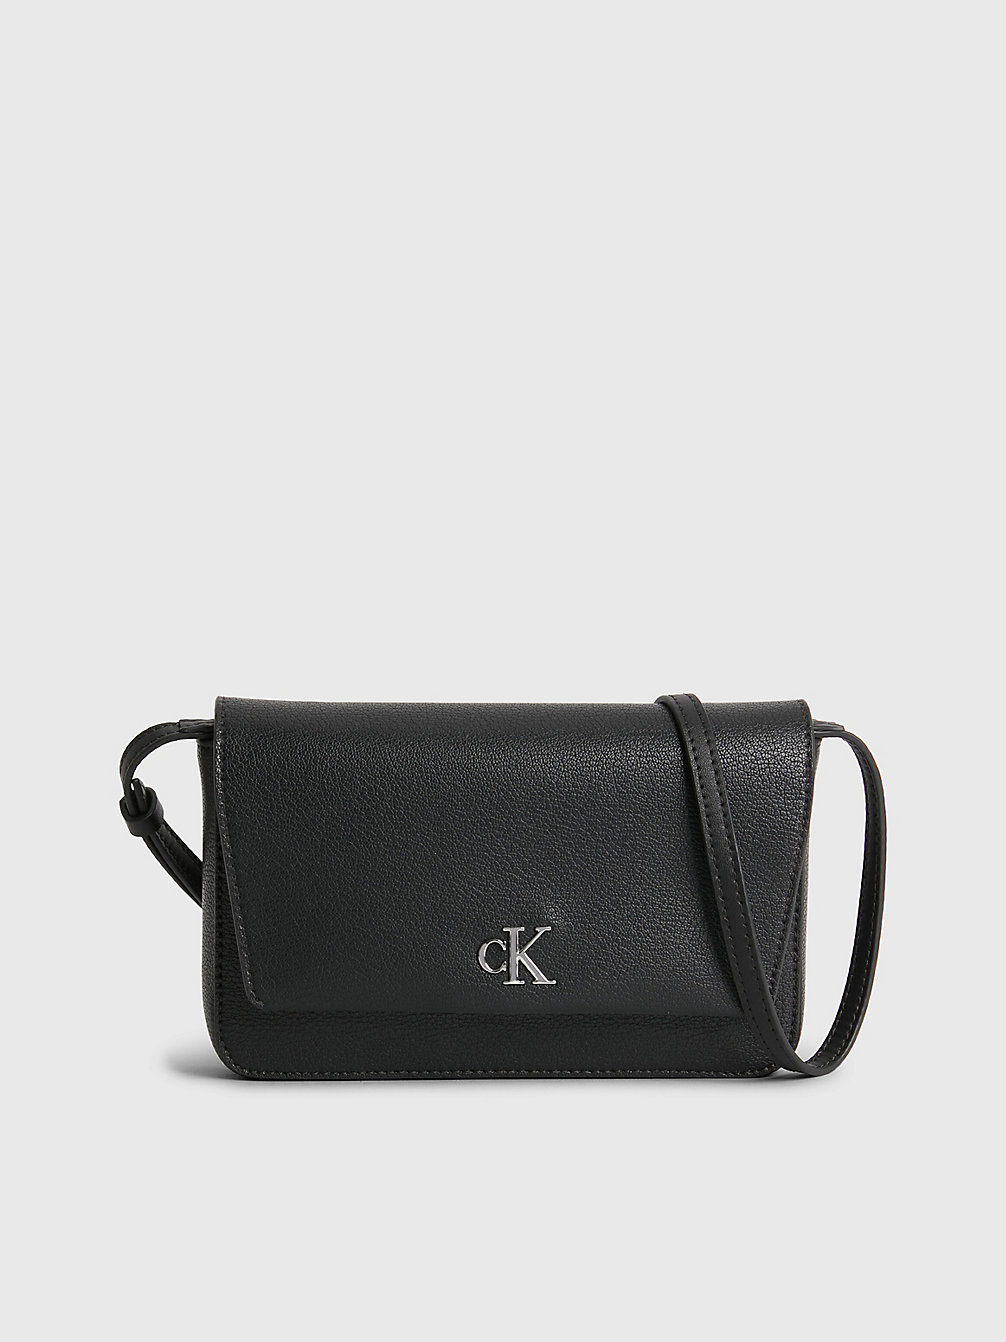 BLACK > Kleine Crossbody Bag Aus Recyceltem Material > undefined Damen - Calvin Klein